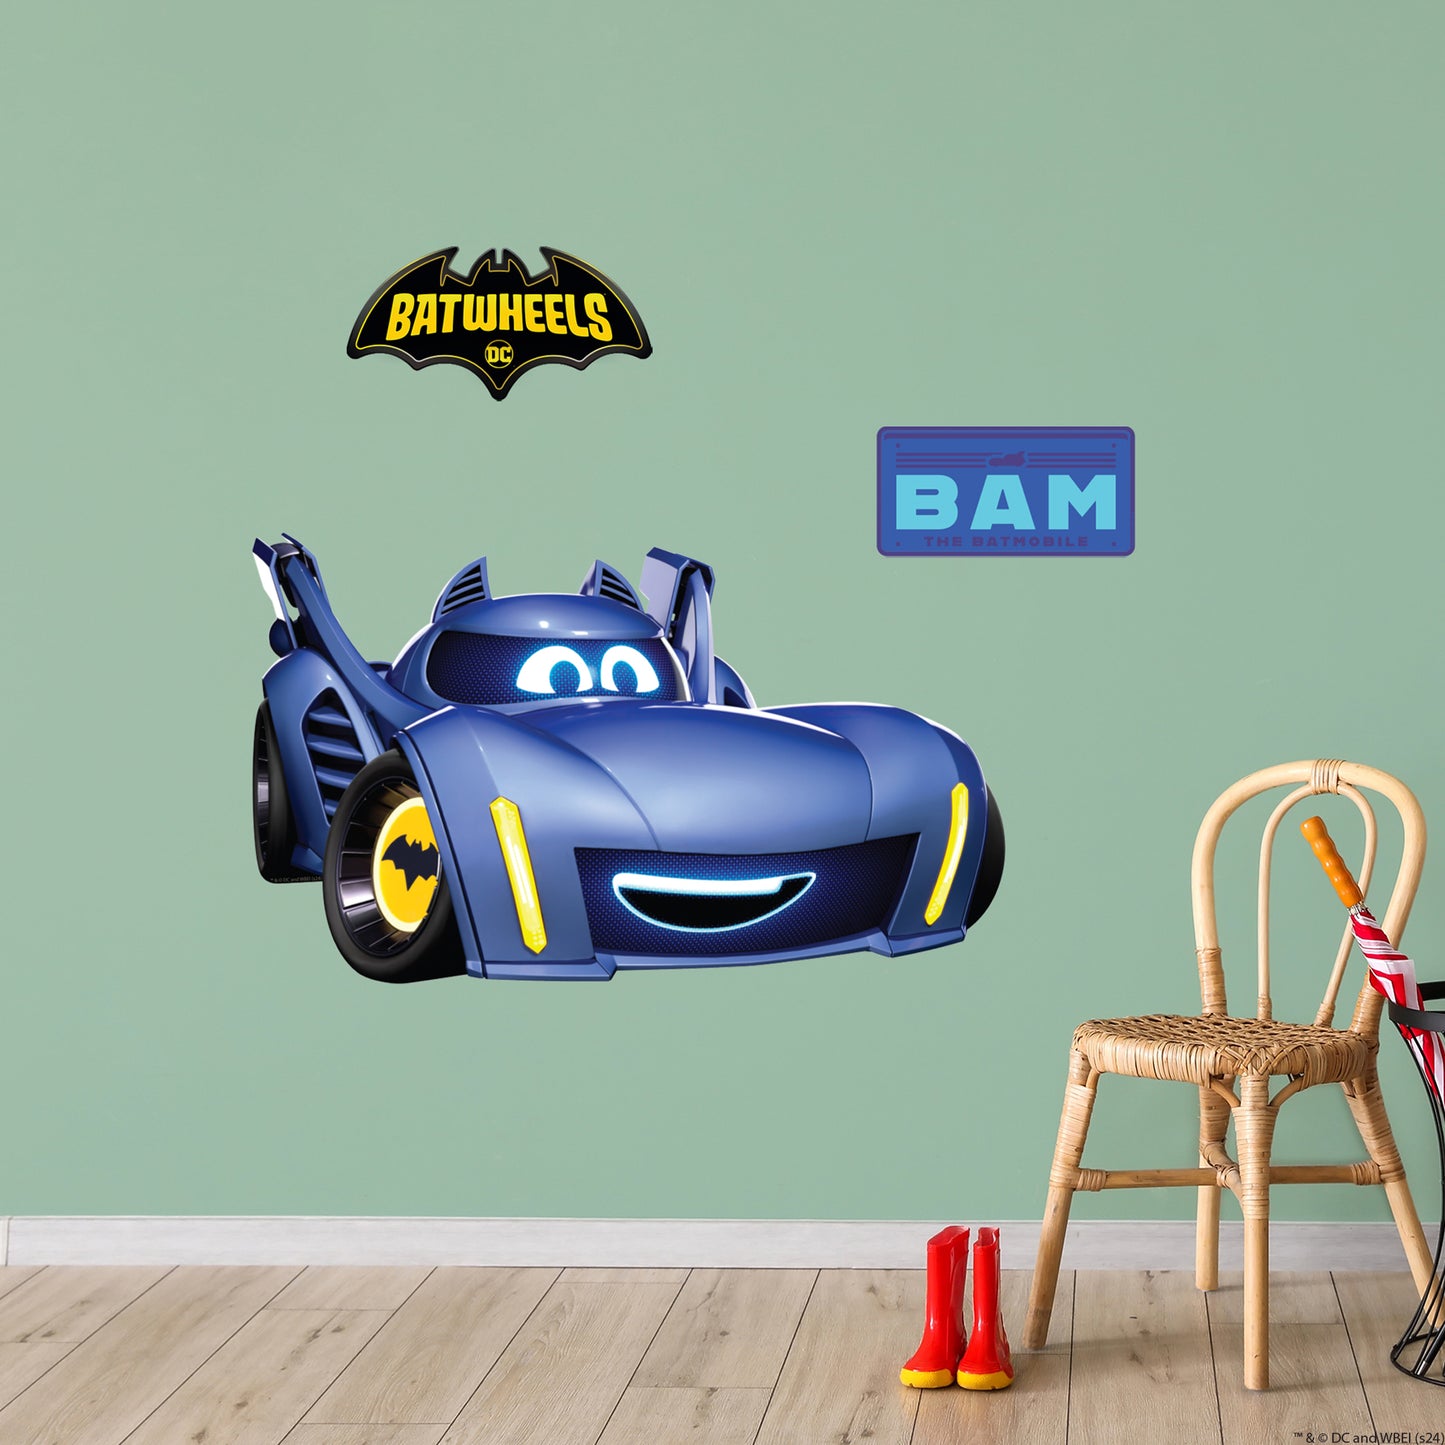 Batwheels™ Wall Sticker - Bam Decal DC Superhero Art